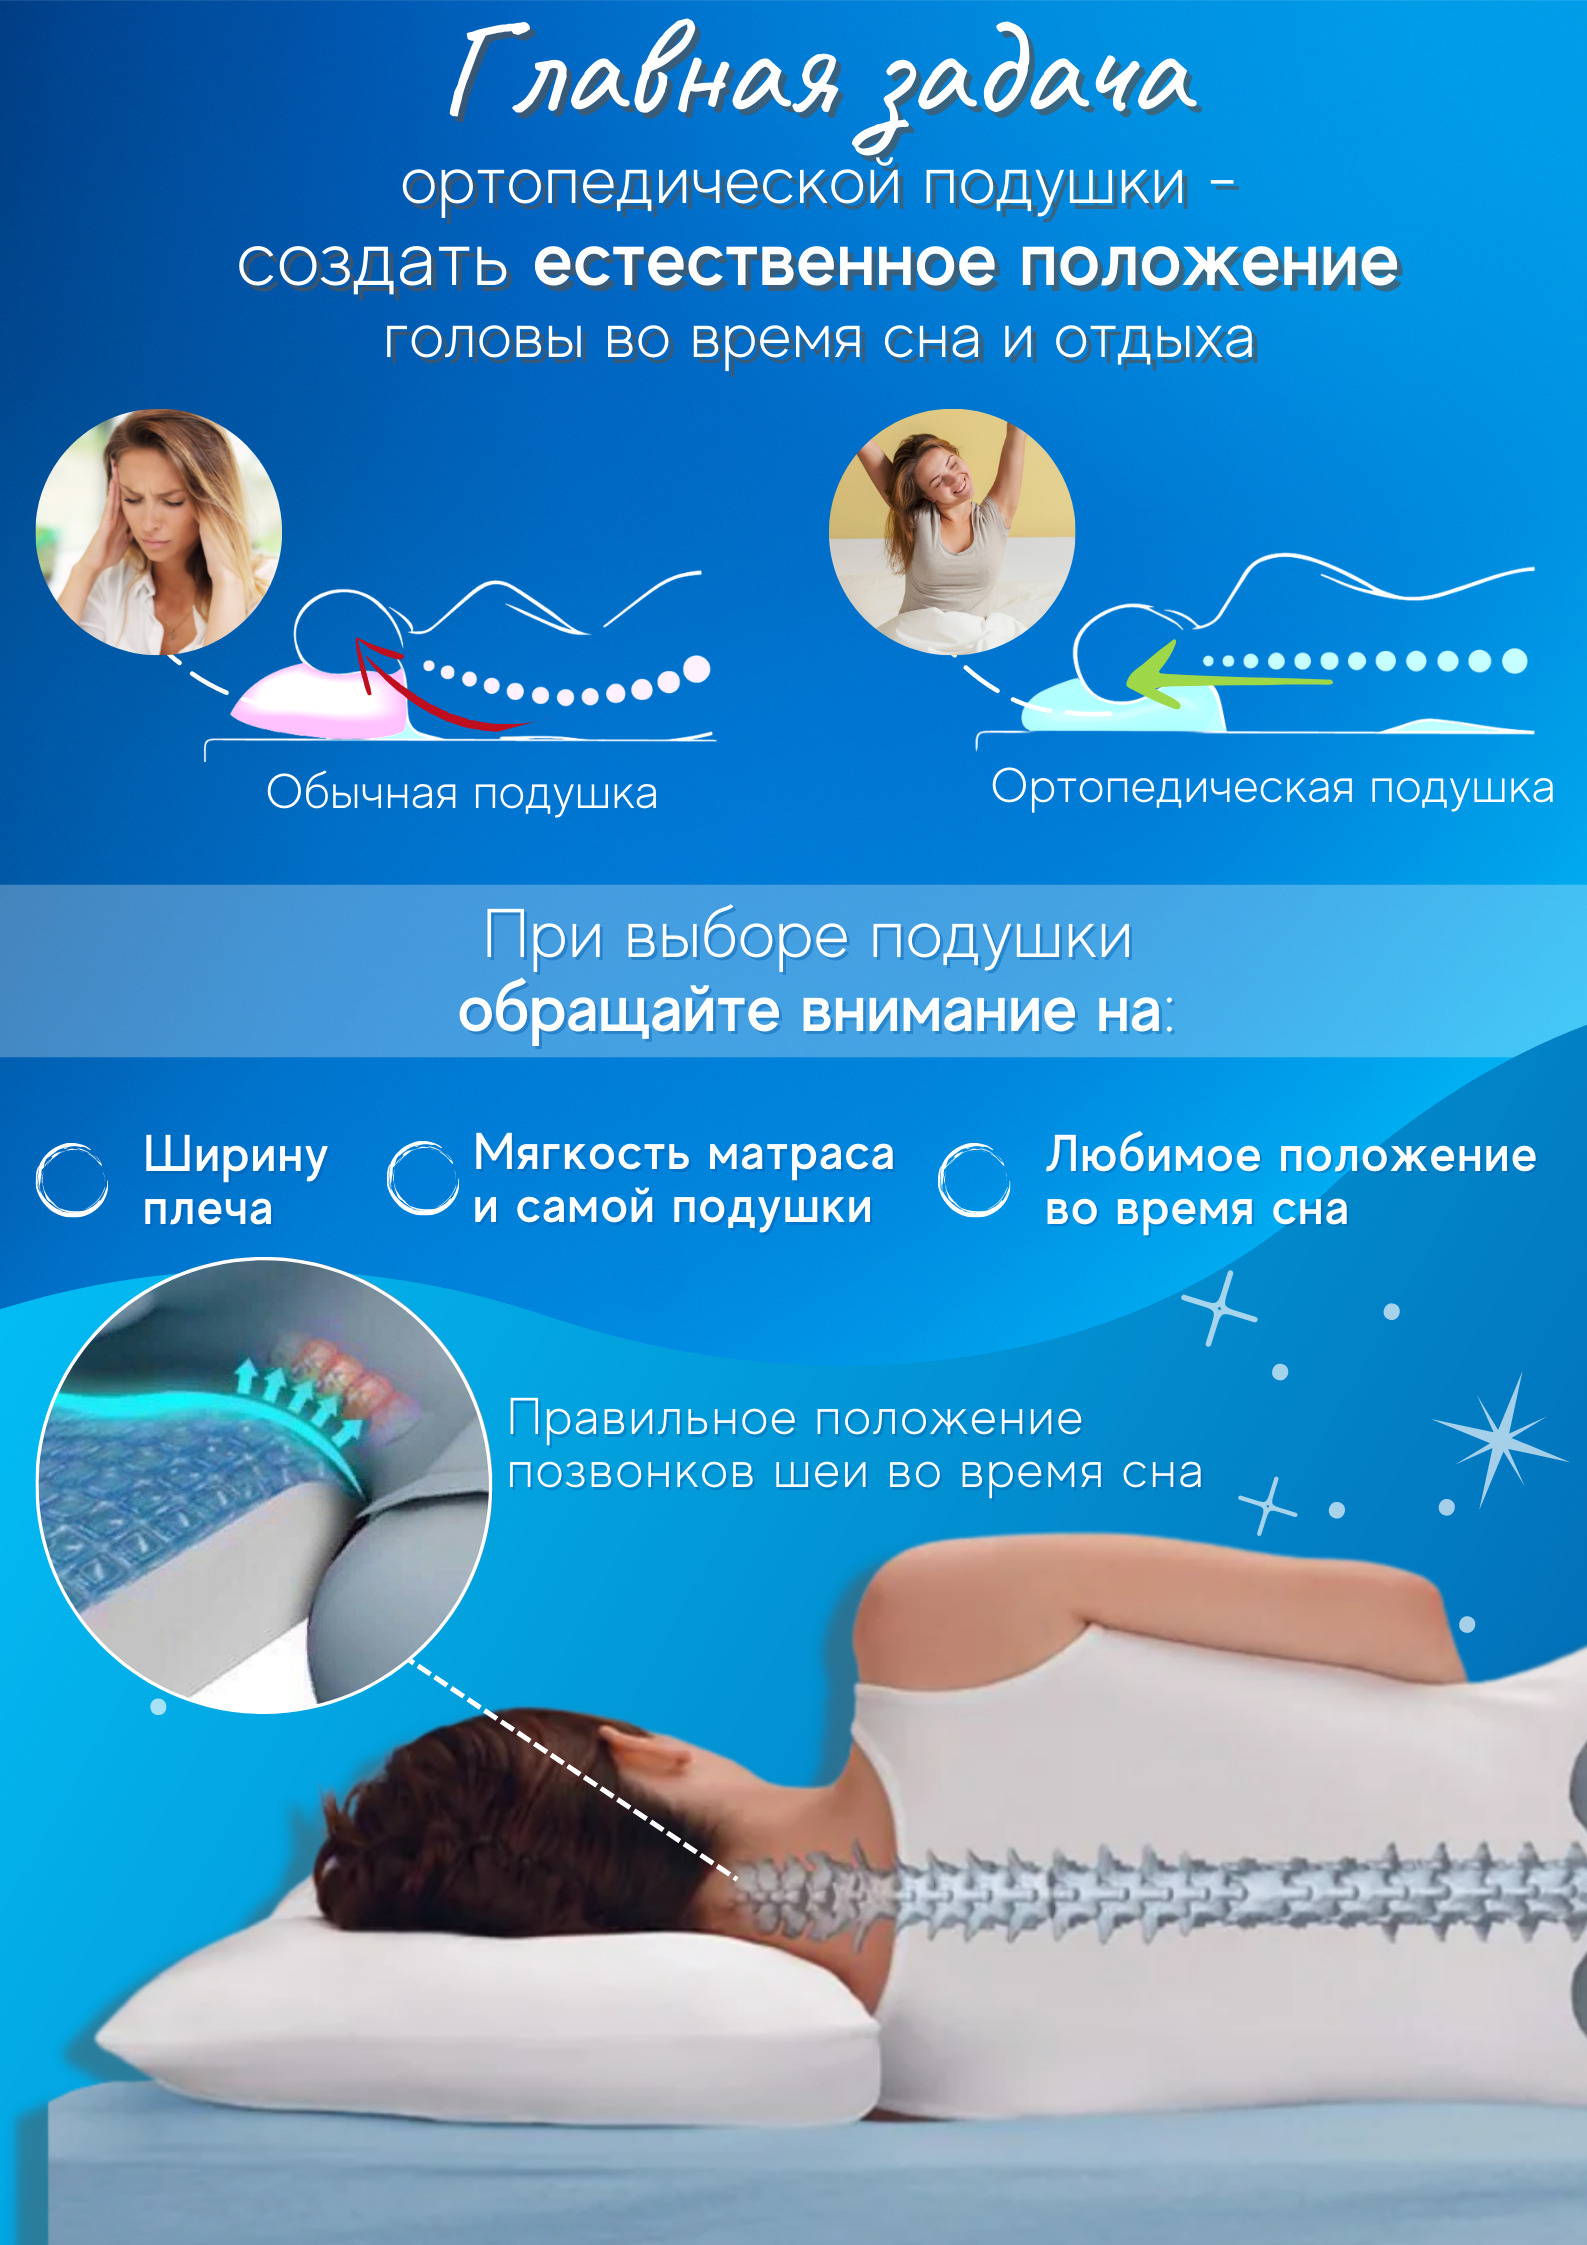 Как подобрать высоту подушки. Правильная подушка. Правильная подушка для сна. Как выбрать ортопедическую подушку. Ортопедическая подушка в подарок.